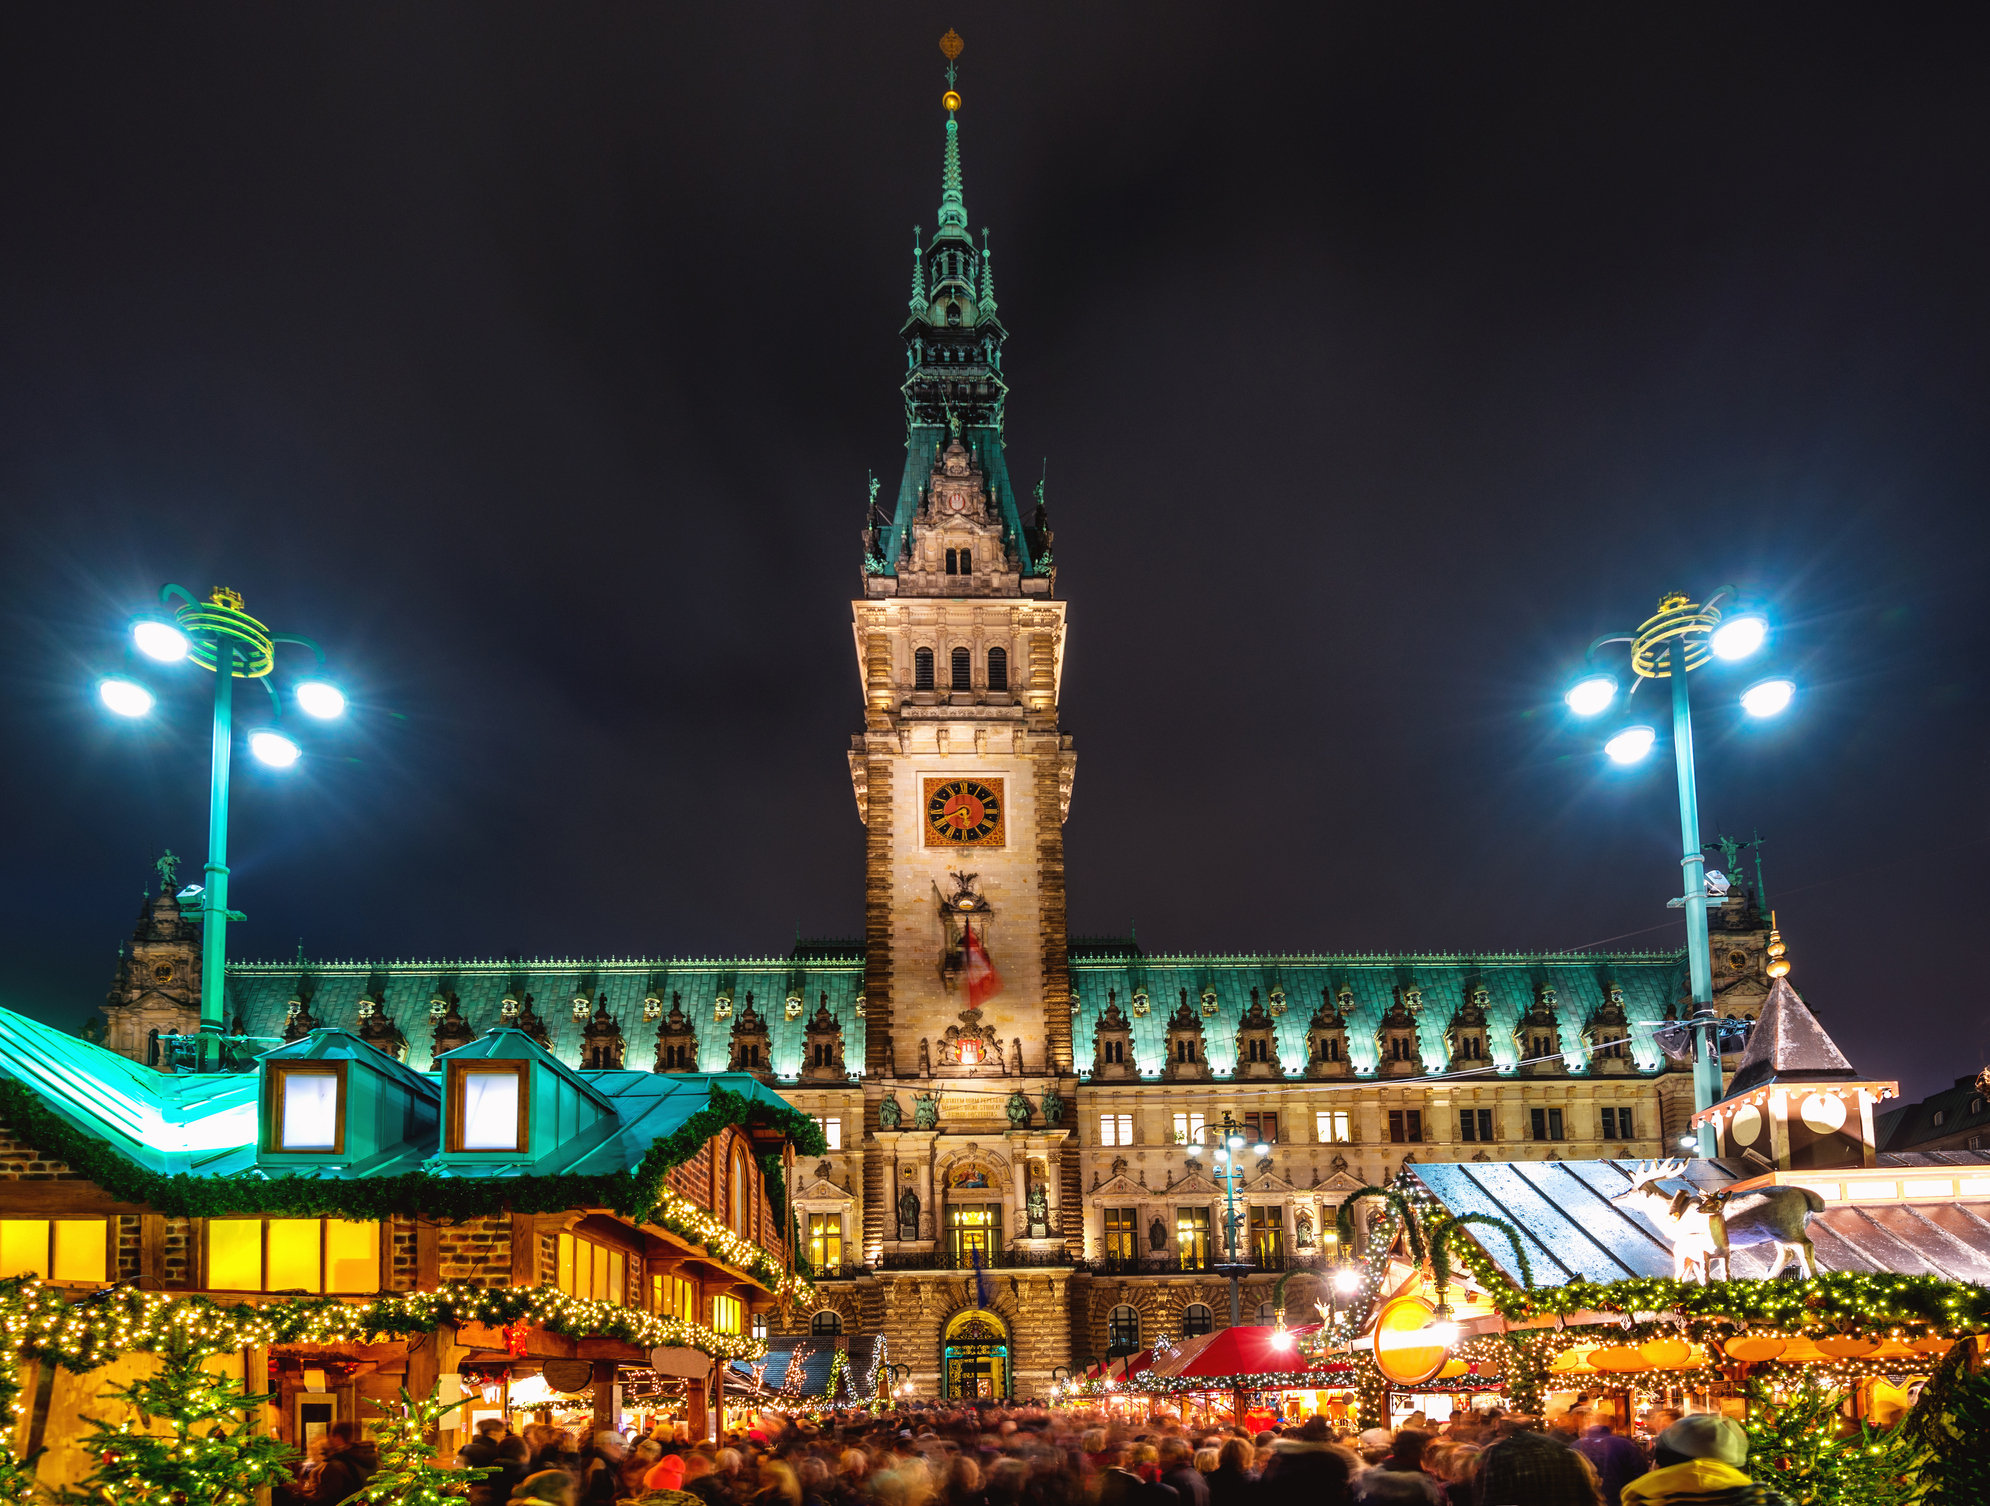 Der Weihnachtsmarkt Hamburg Rathausplatz ist einer der schönsten Deutschlands